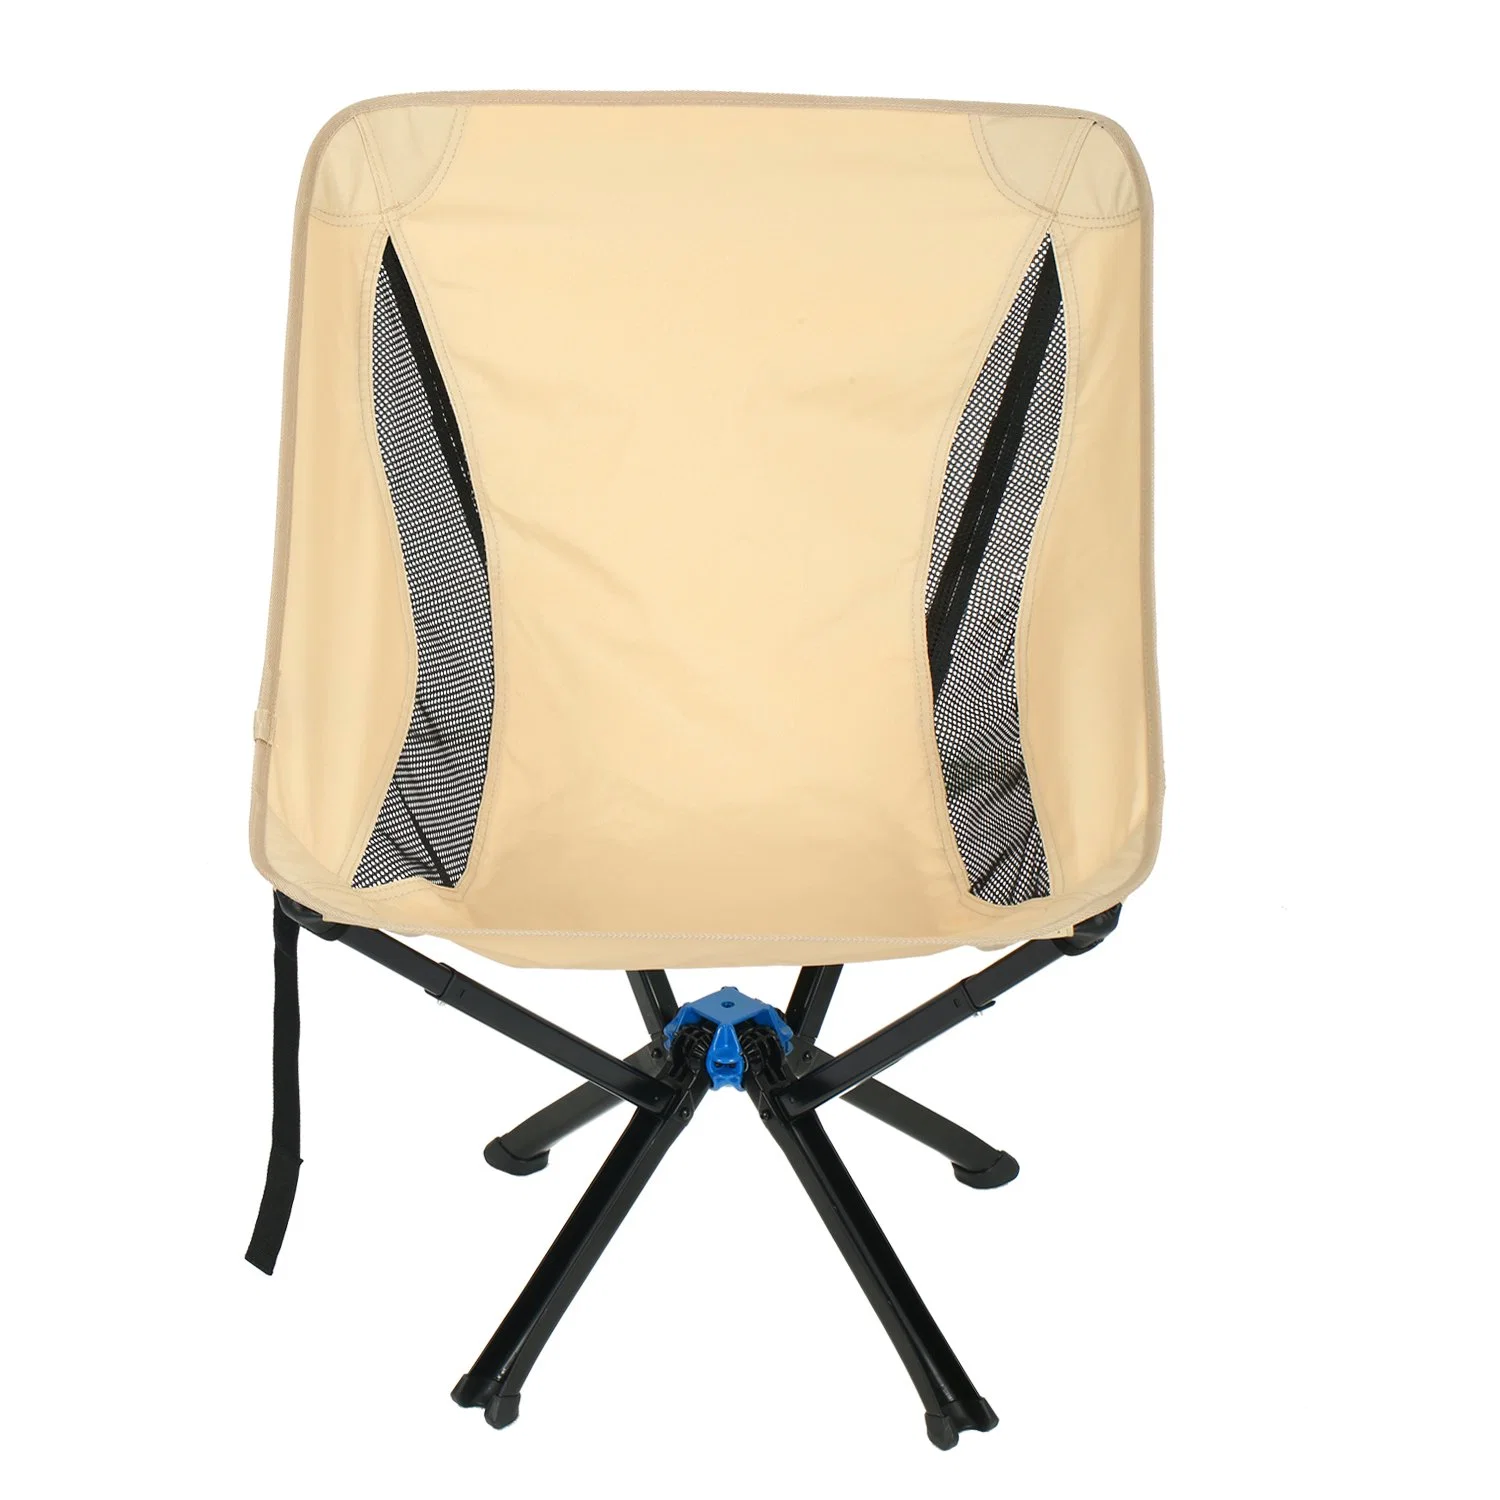 Chaise de camping Anywhere Chair de grande taille - une chaise pliante portable et polyvalente pour adultes.